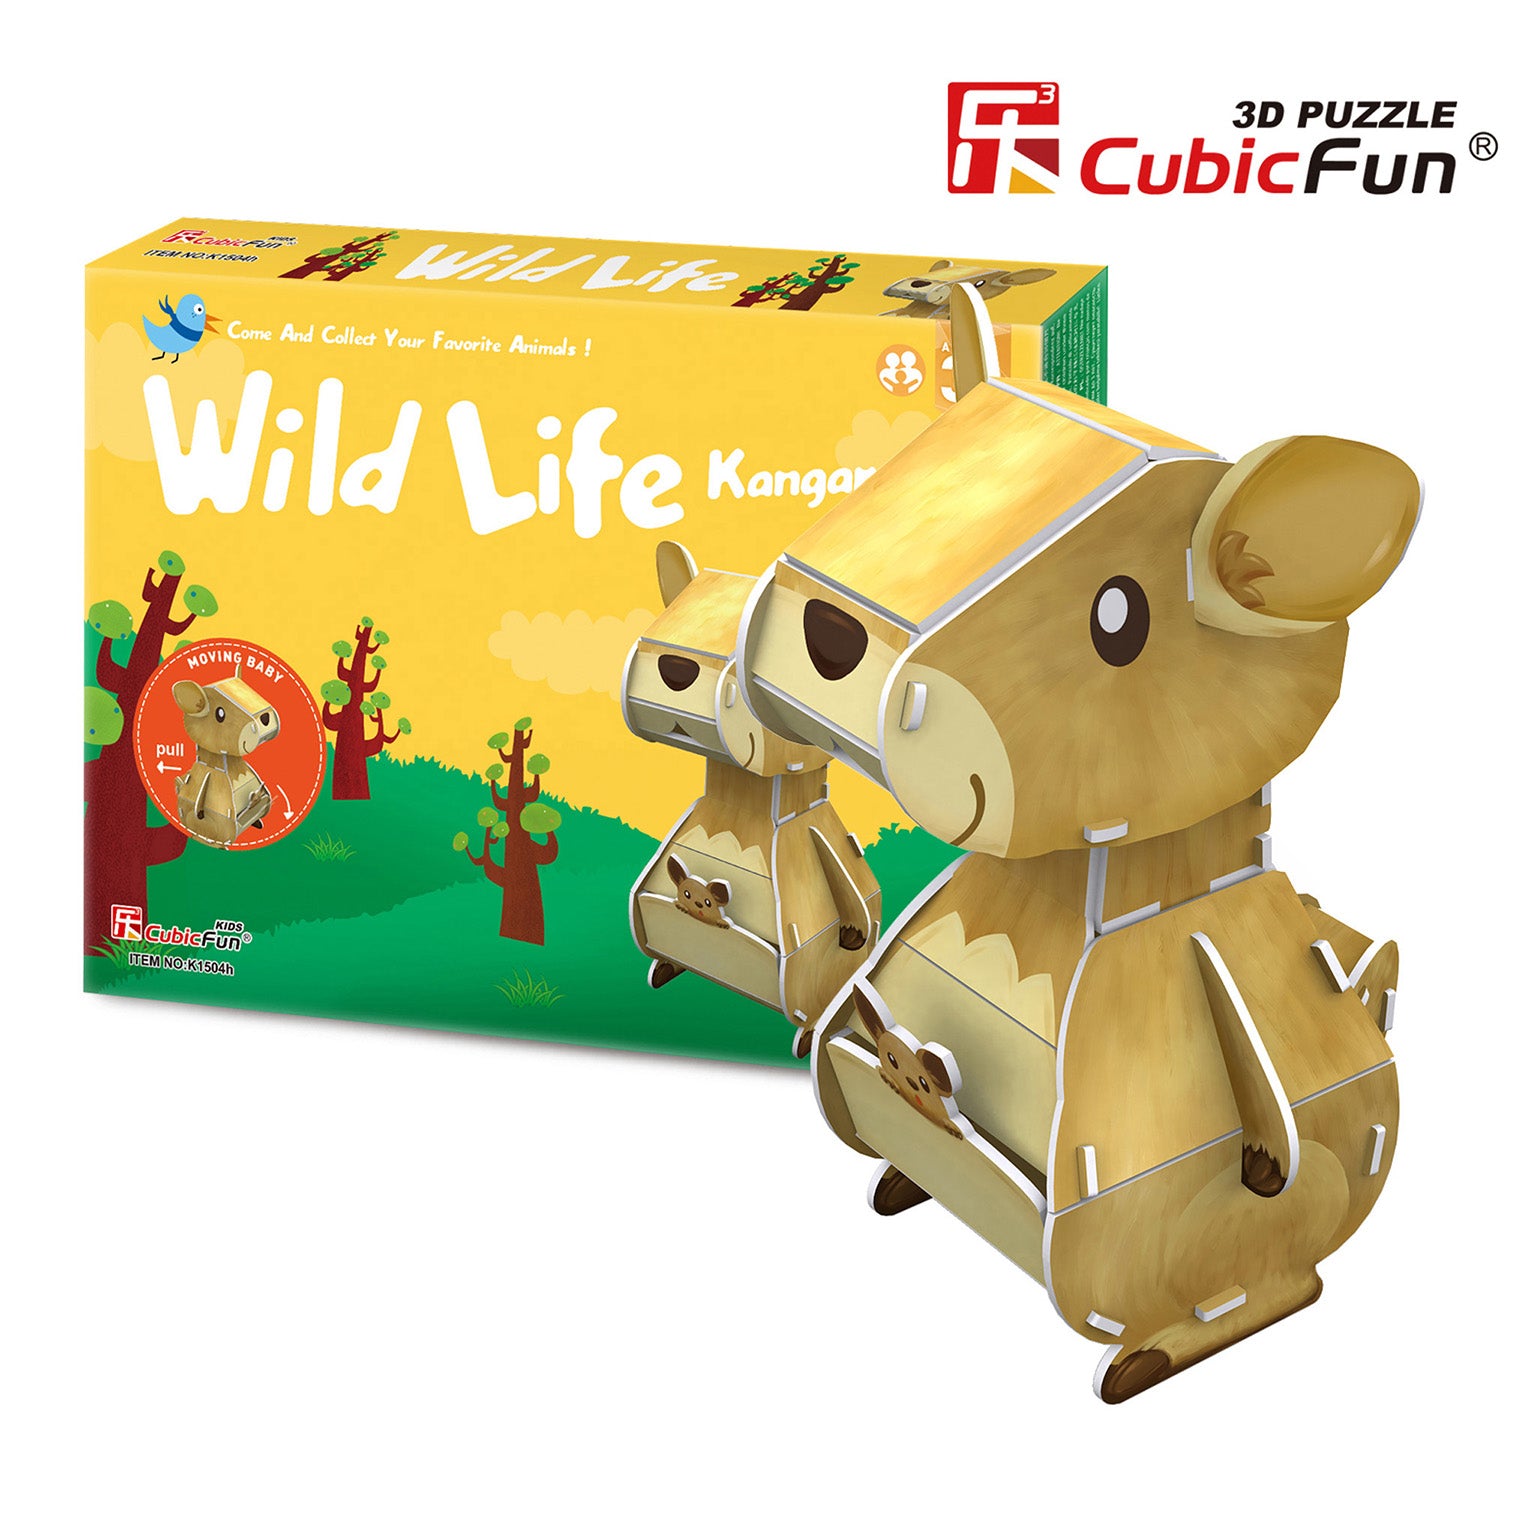 Wild Life Series - Kangaroo, 3D Puzzle